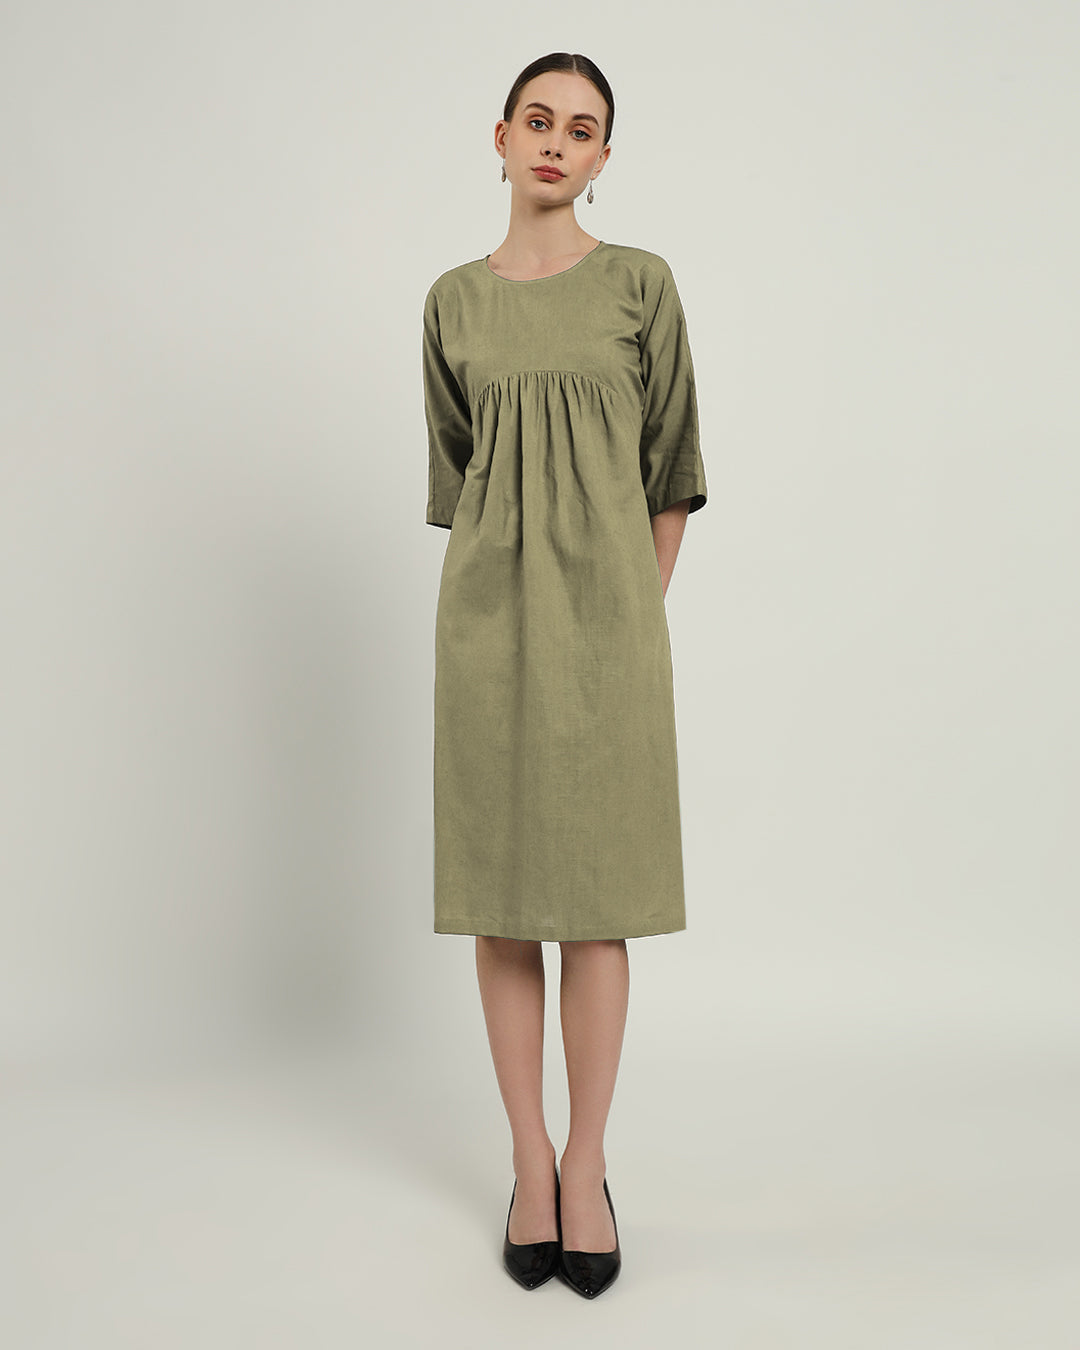 The Monrovia Daisy Olive Linen Dress